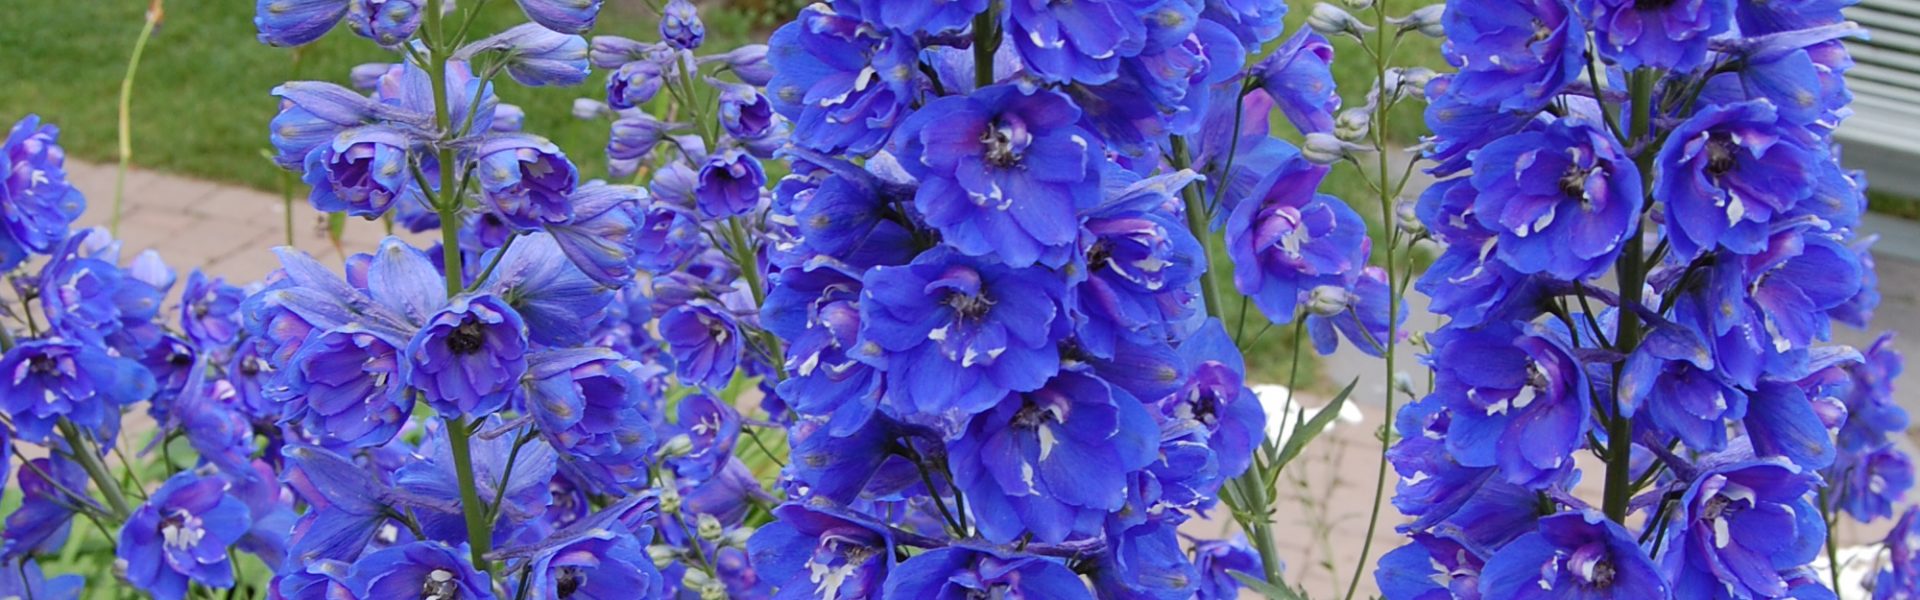 Sommer i blått – blå blomster til krukker og blomsterbed